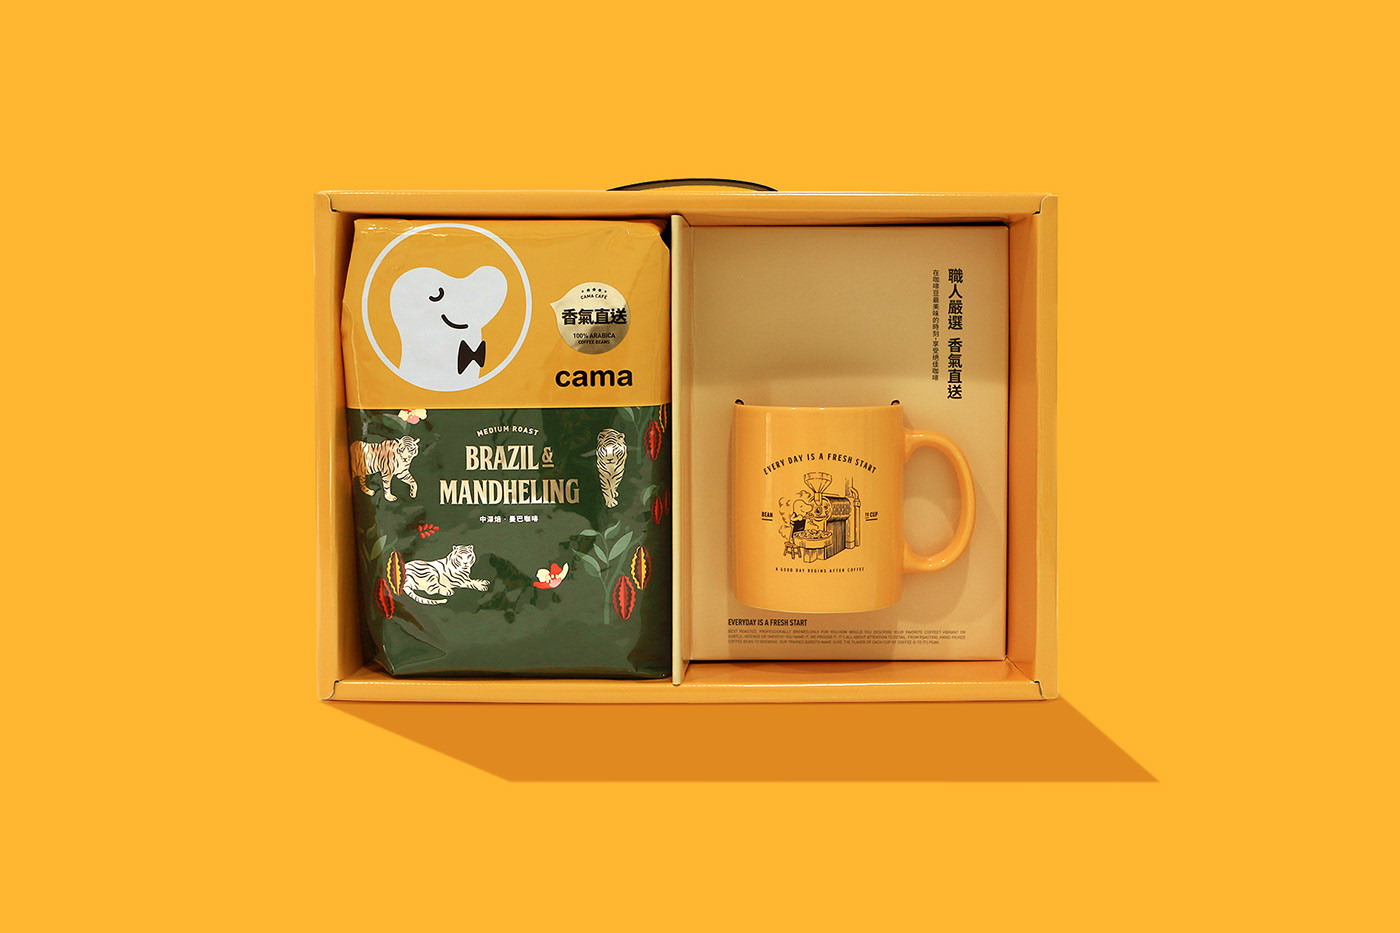 cama café咖啡豆礼盒包装设计